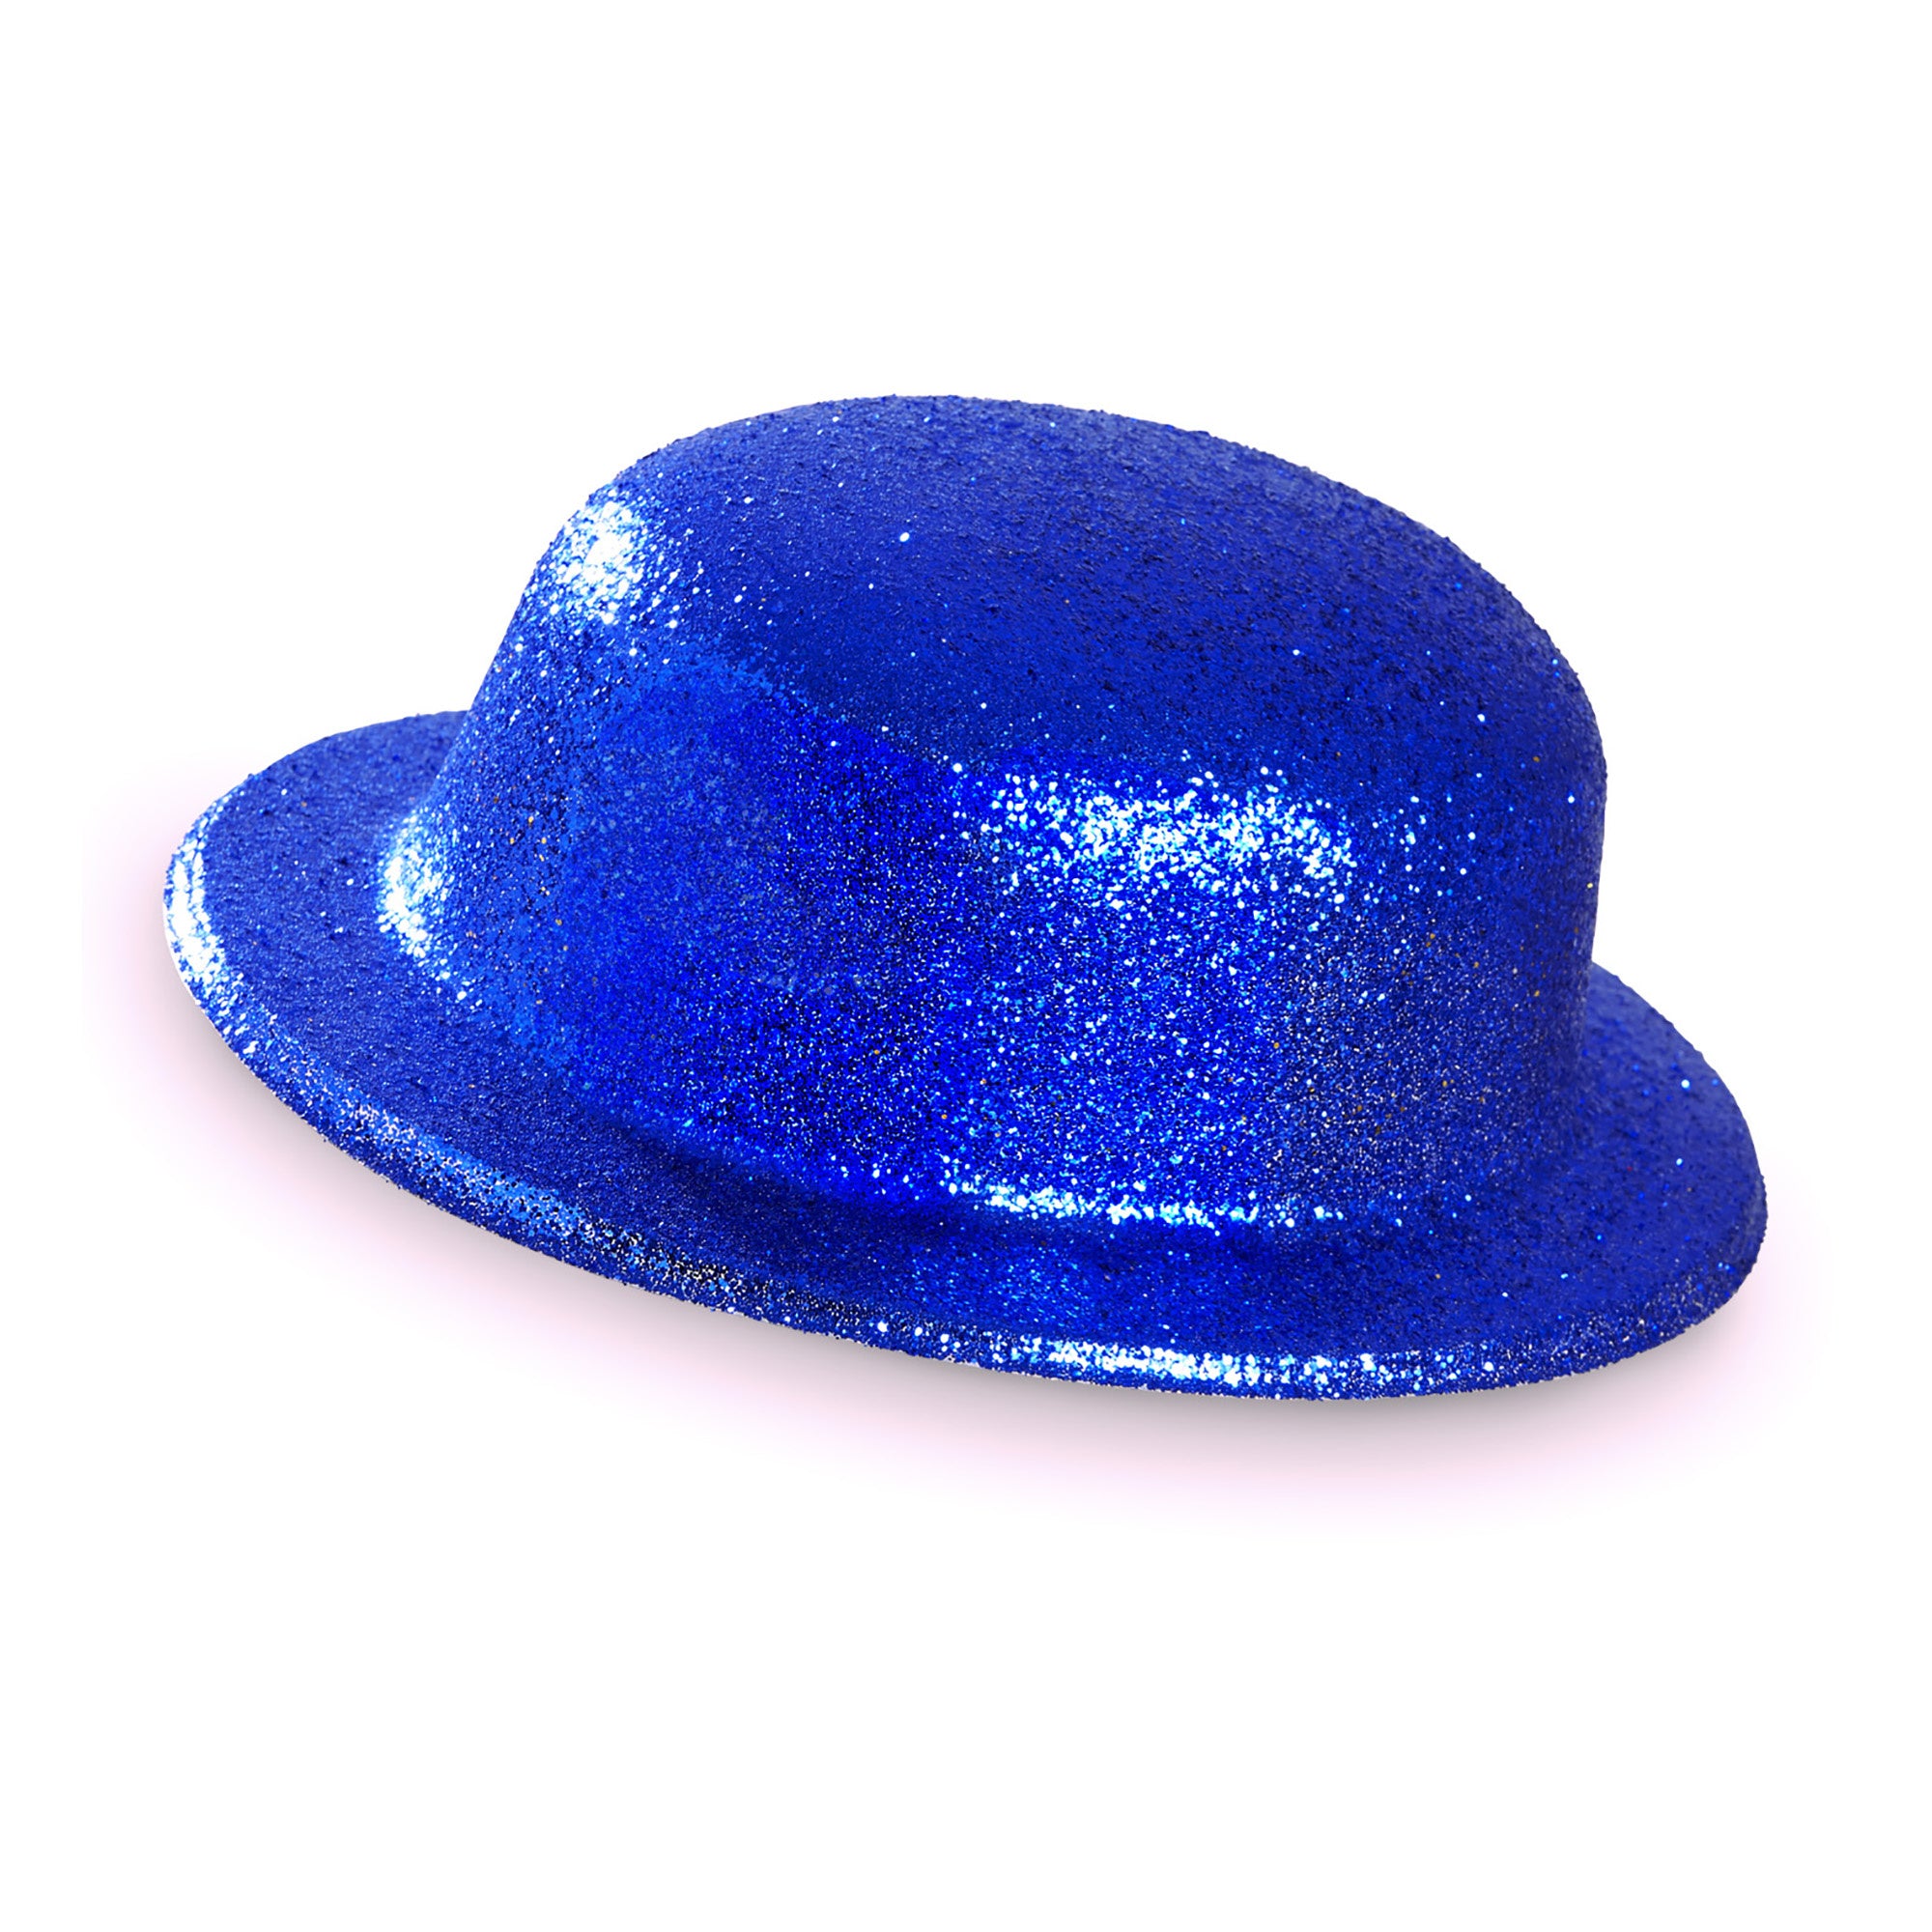 Widmann -Showmaster Glitter Bolhoed, Blauw - blauw - Carnavalskleding - Verkleedkleding